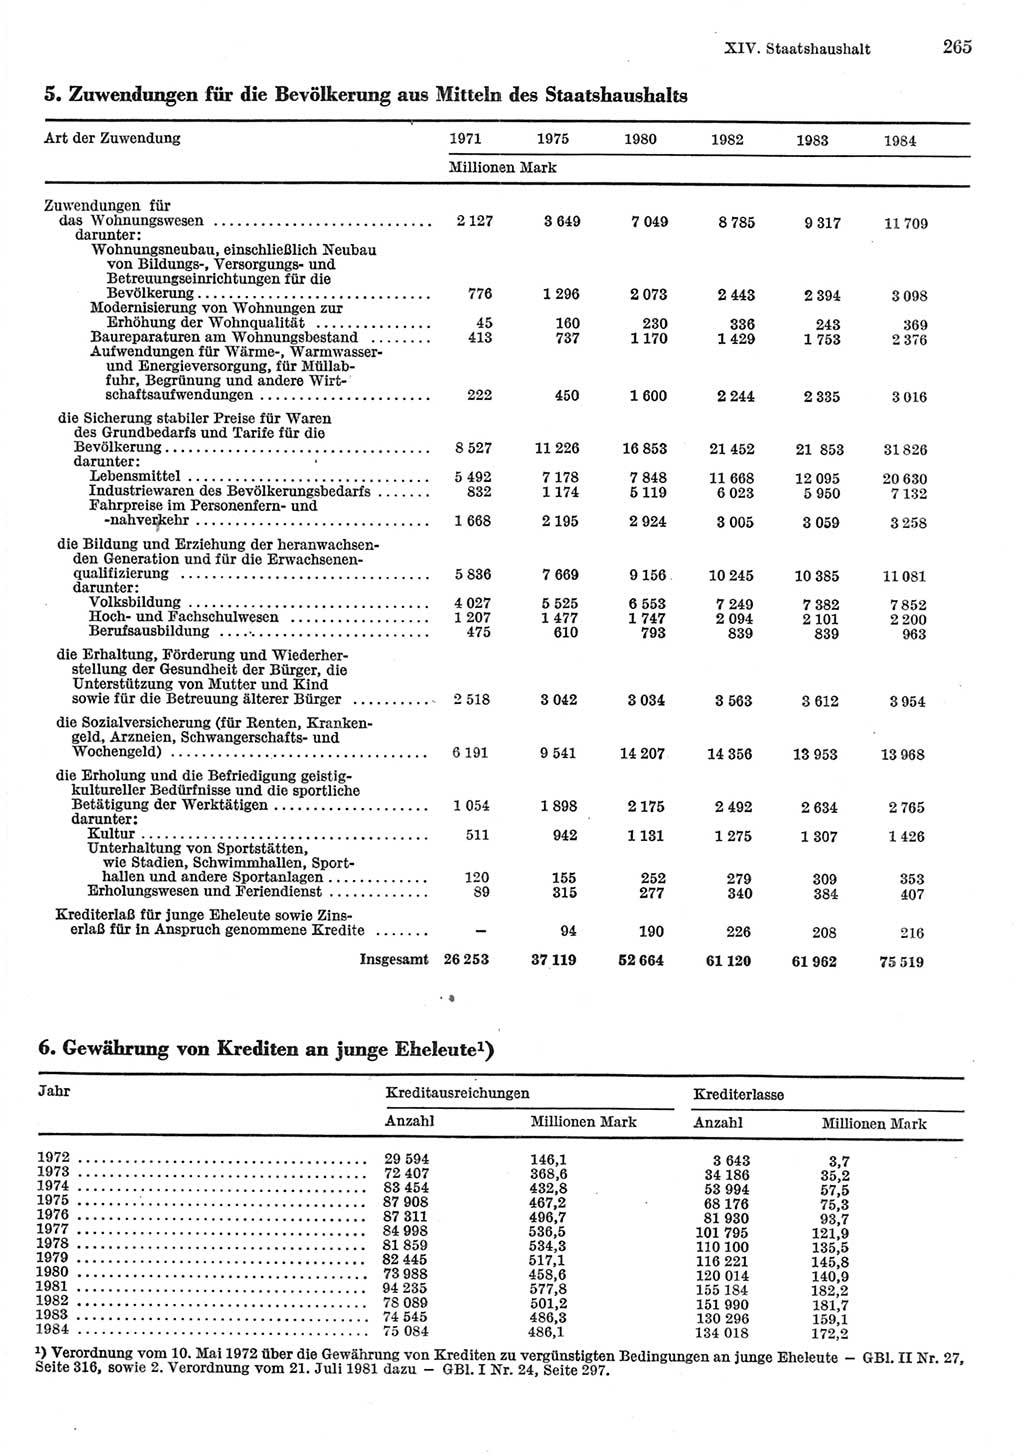 Statistisches Jahrbuch der Deutschen Demokratischen Republik (DDR) 1985, Seite 265 (Stat. Jb. DDR 1985, S. 265)